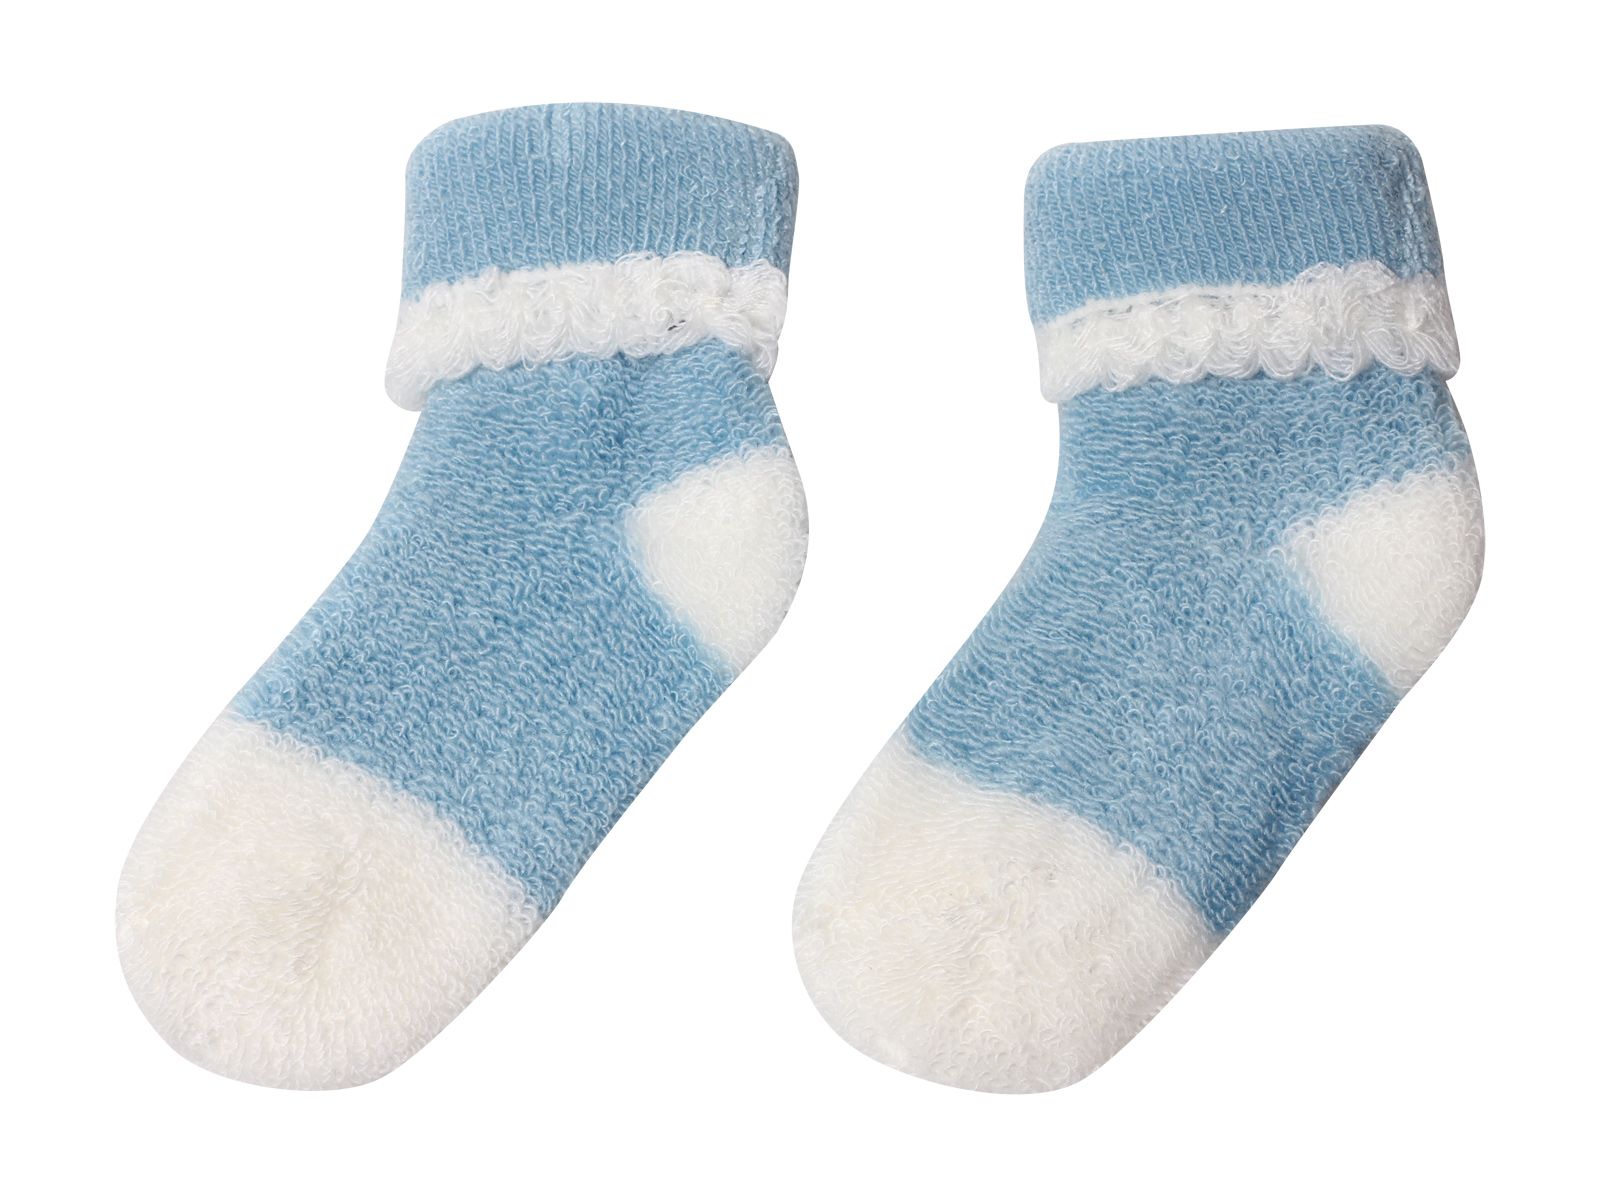 woolen socks buy online india